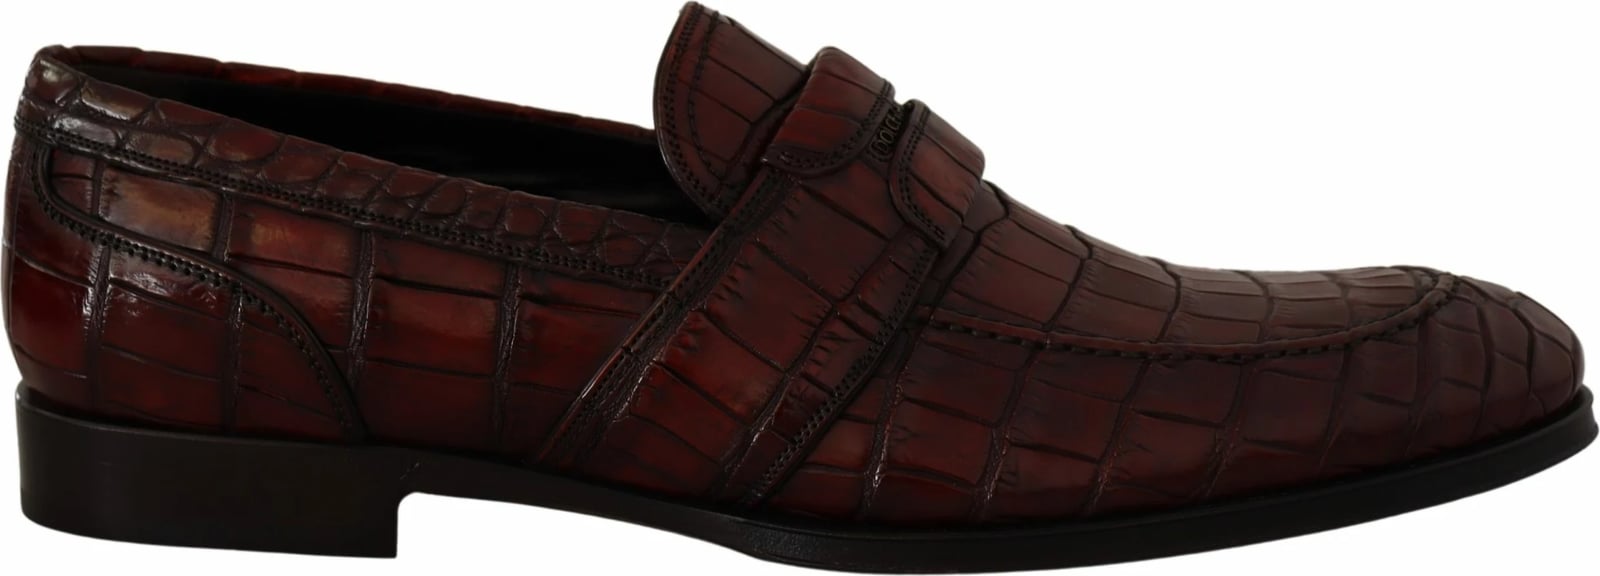 Këpucë për meshkuj Dolce & Gabbana, të kuqe 